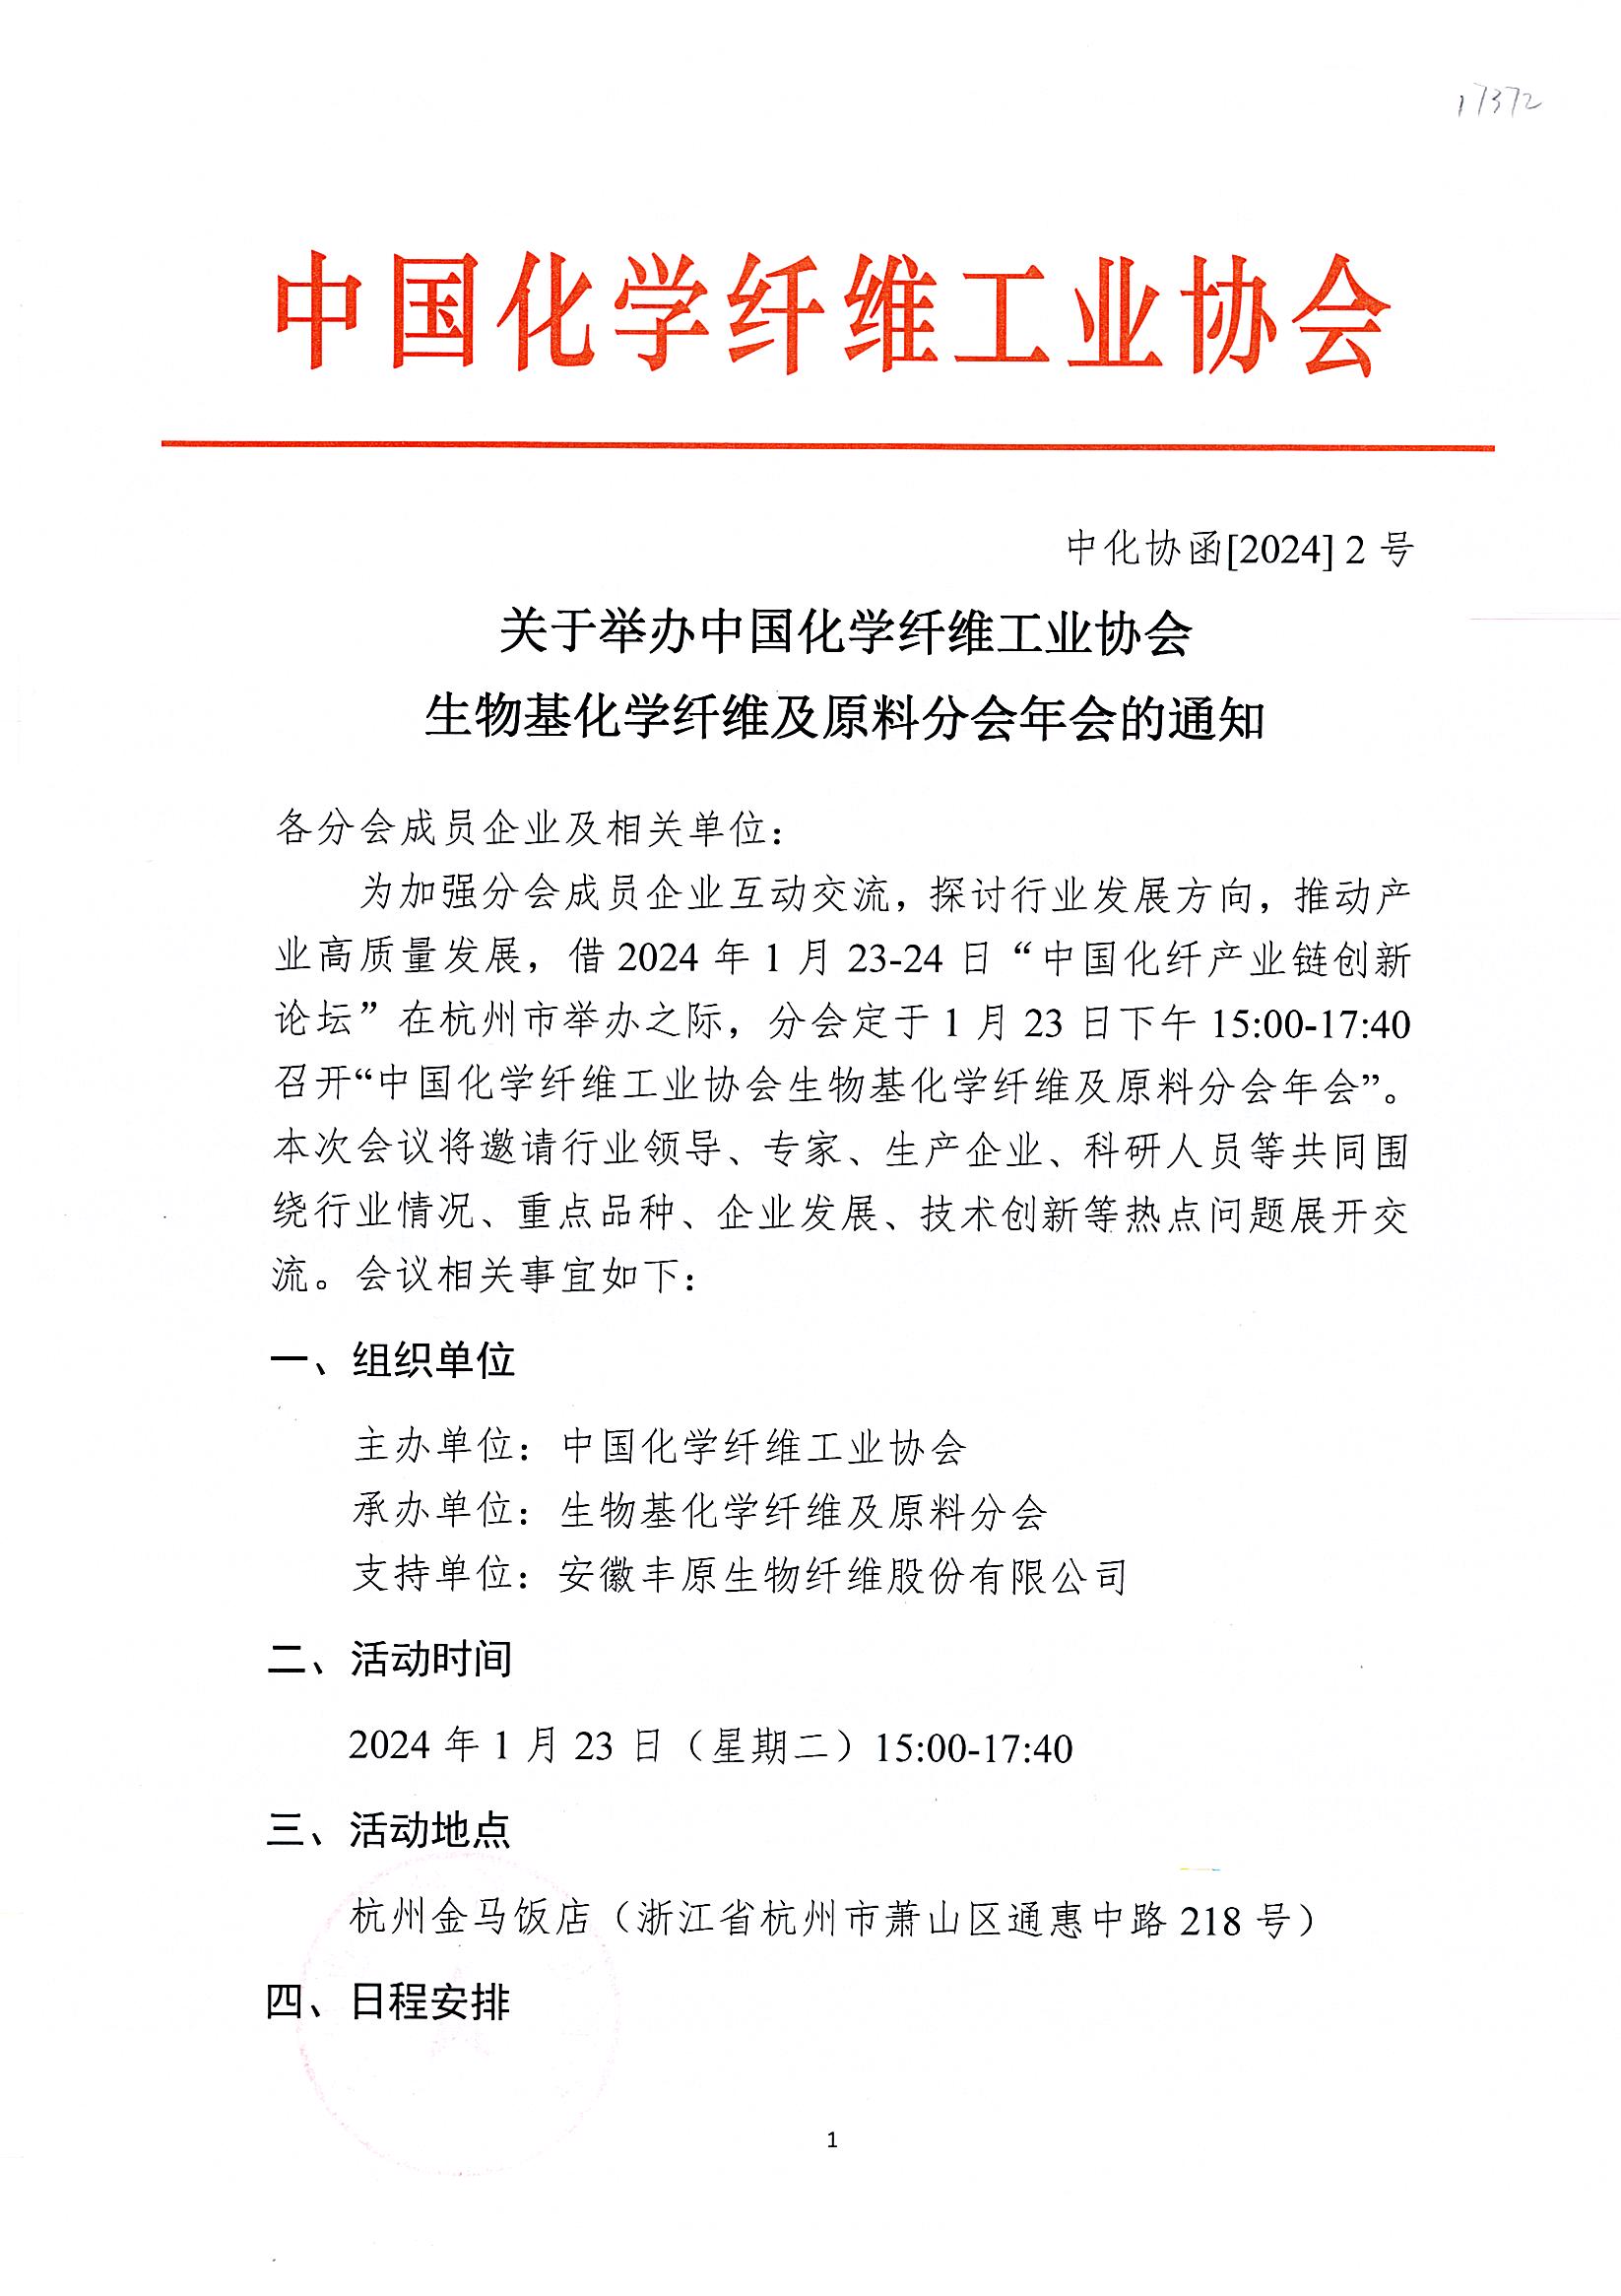 关于举办中国化学纤维工业协会生物基化学纤维及原料分会年会的通知1852_页面_1.jpg